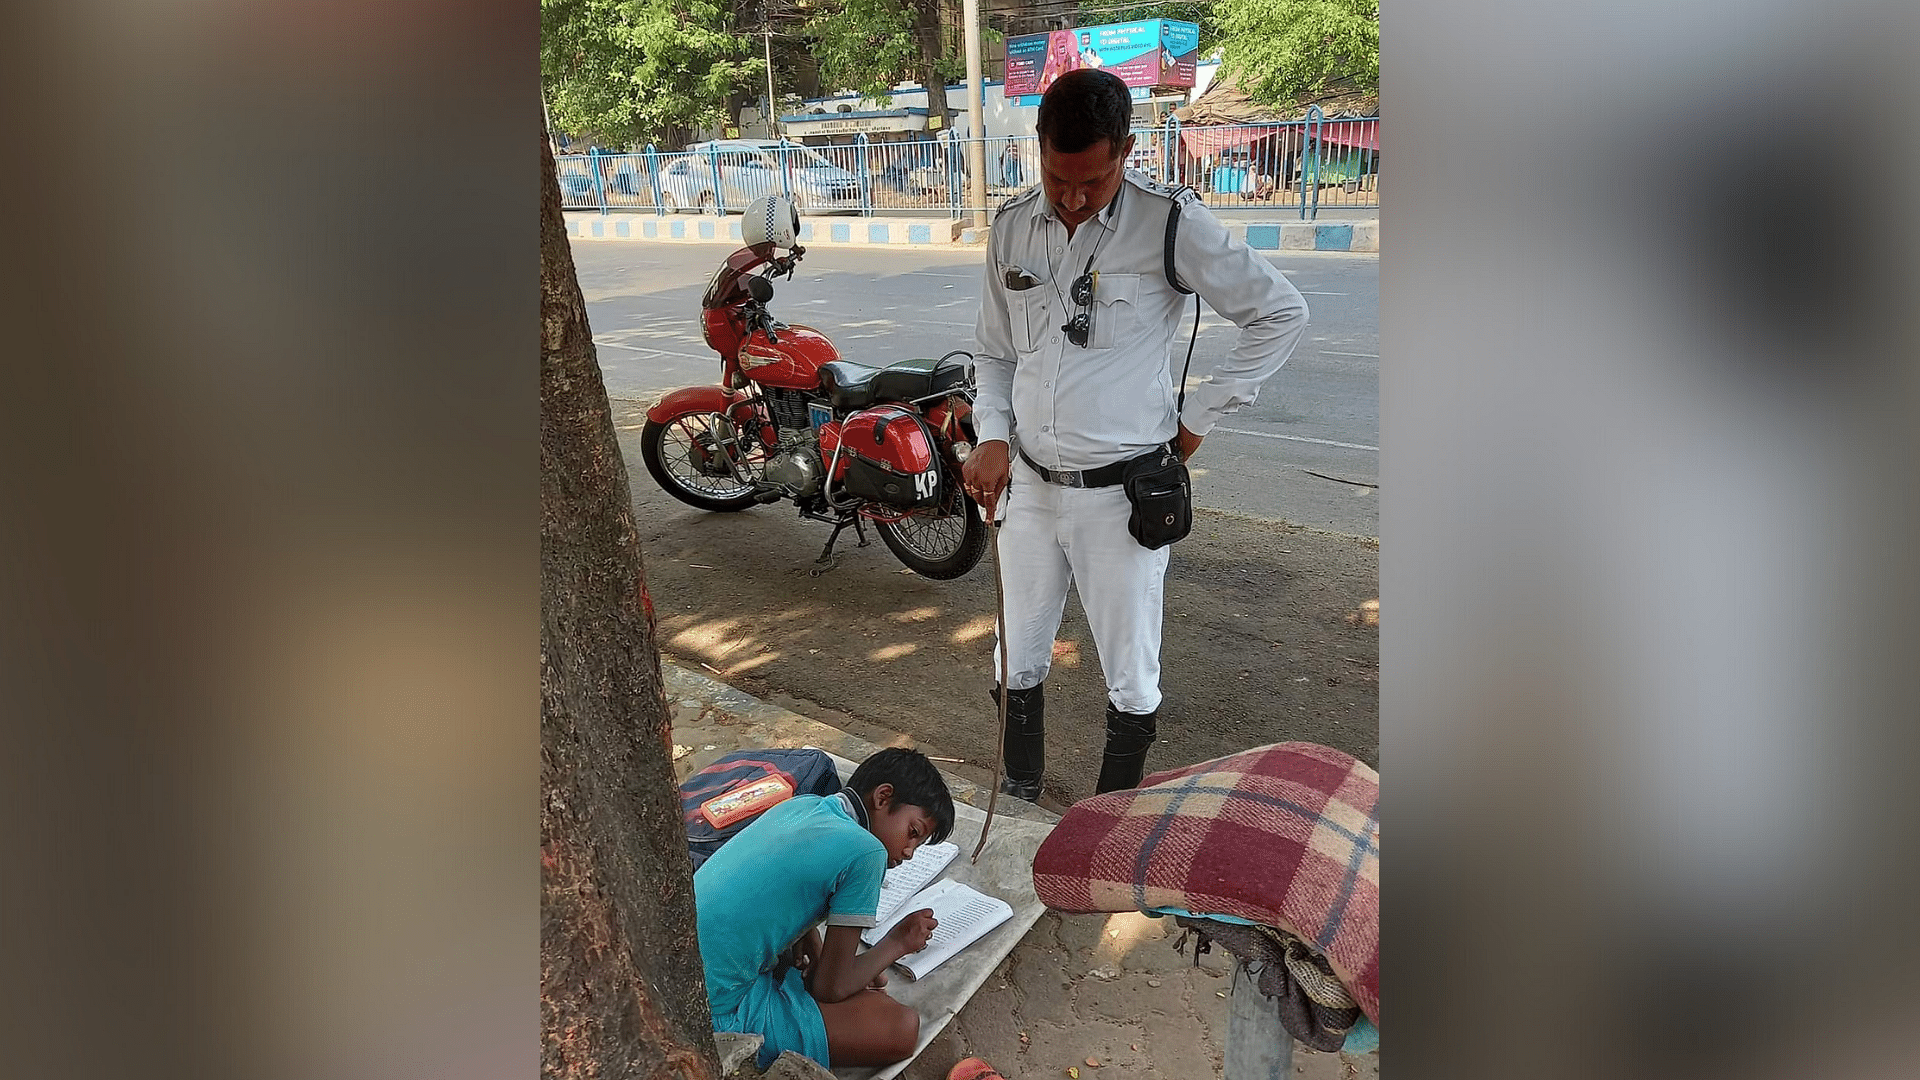 <div class="paragraphs"><p>Sergeant Prakash Ghosh teaches a boy while managing traffic.</p></div>